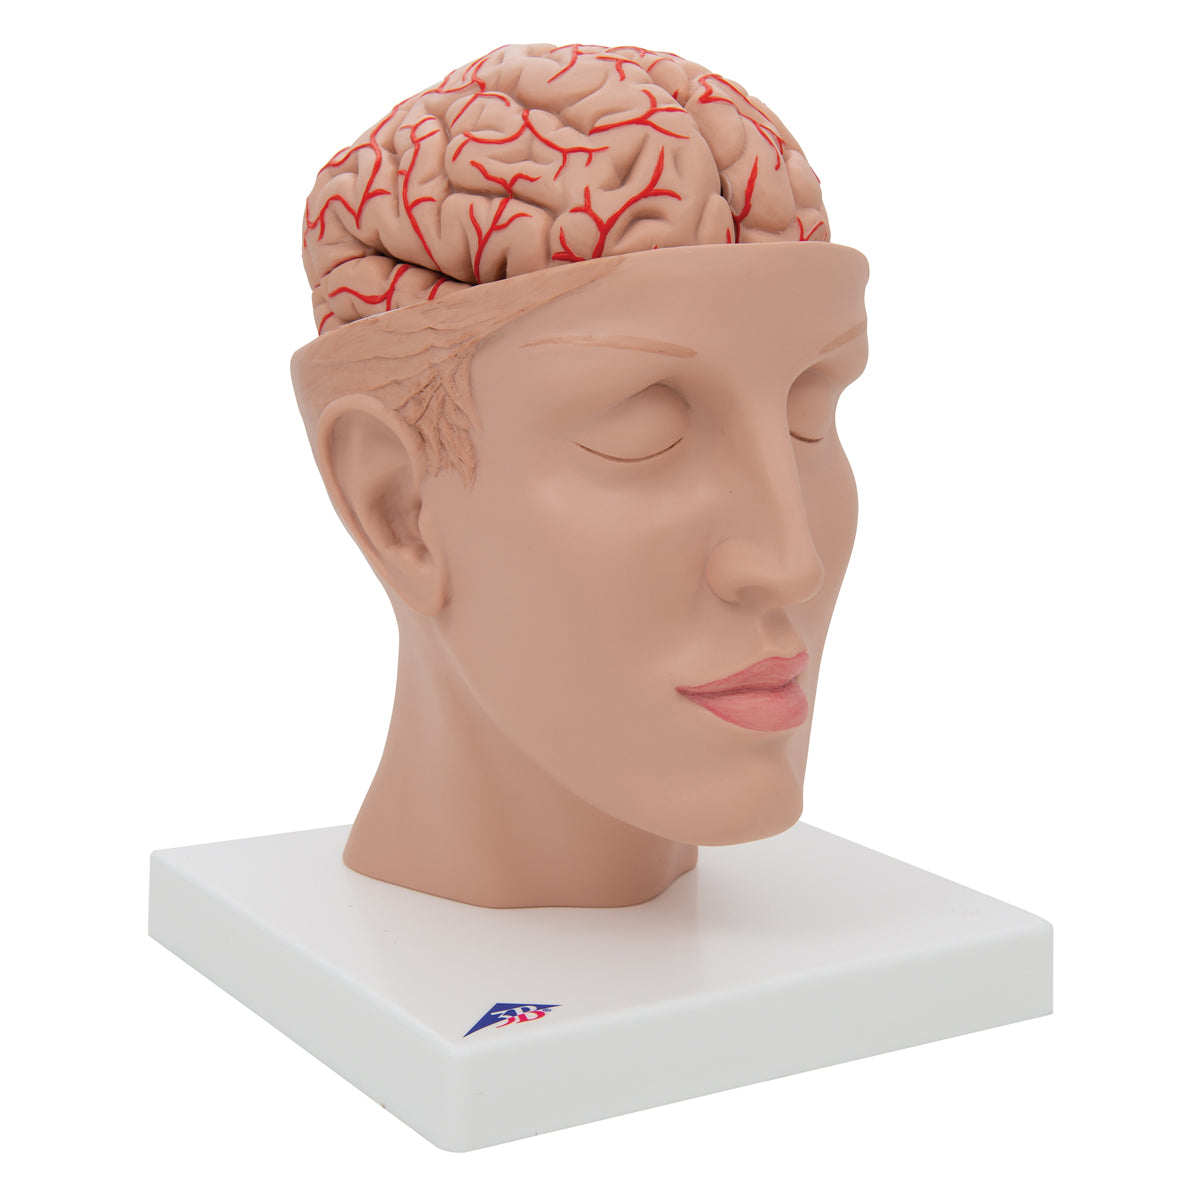 Hjärnmodell som visar artärer, vener och den inre skallbasen. Hjärnan kan tas ut och delas i 8